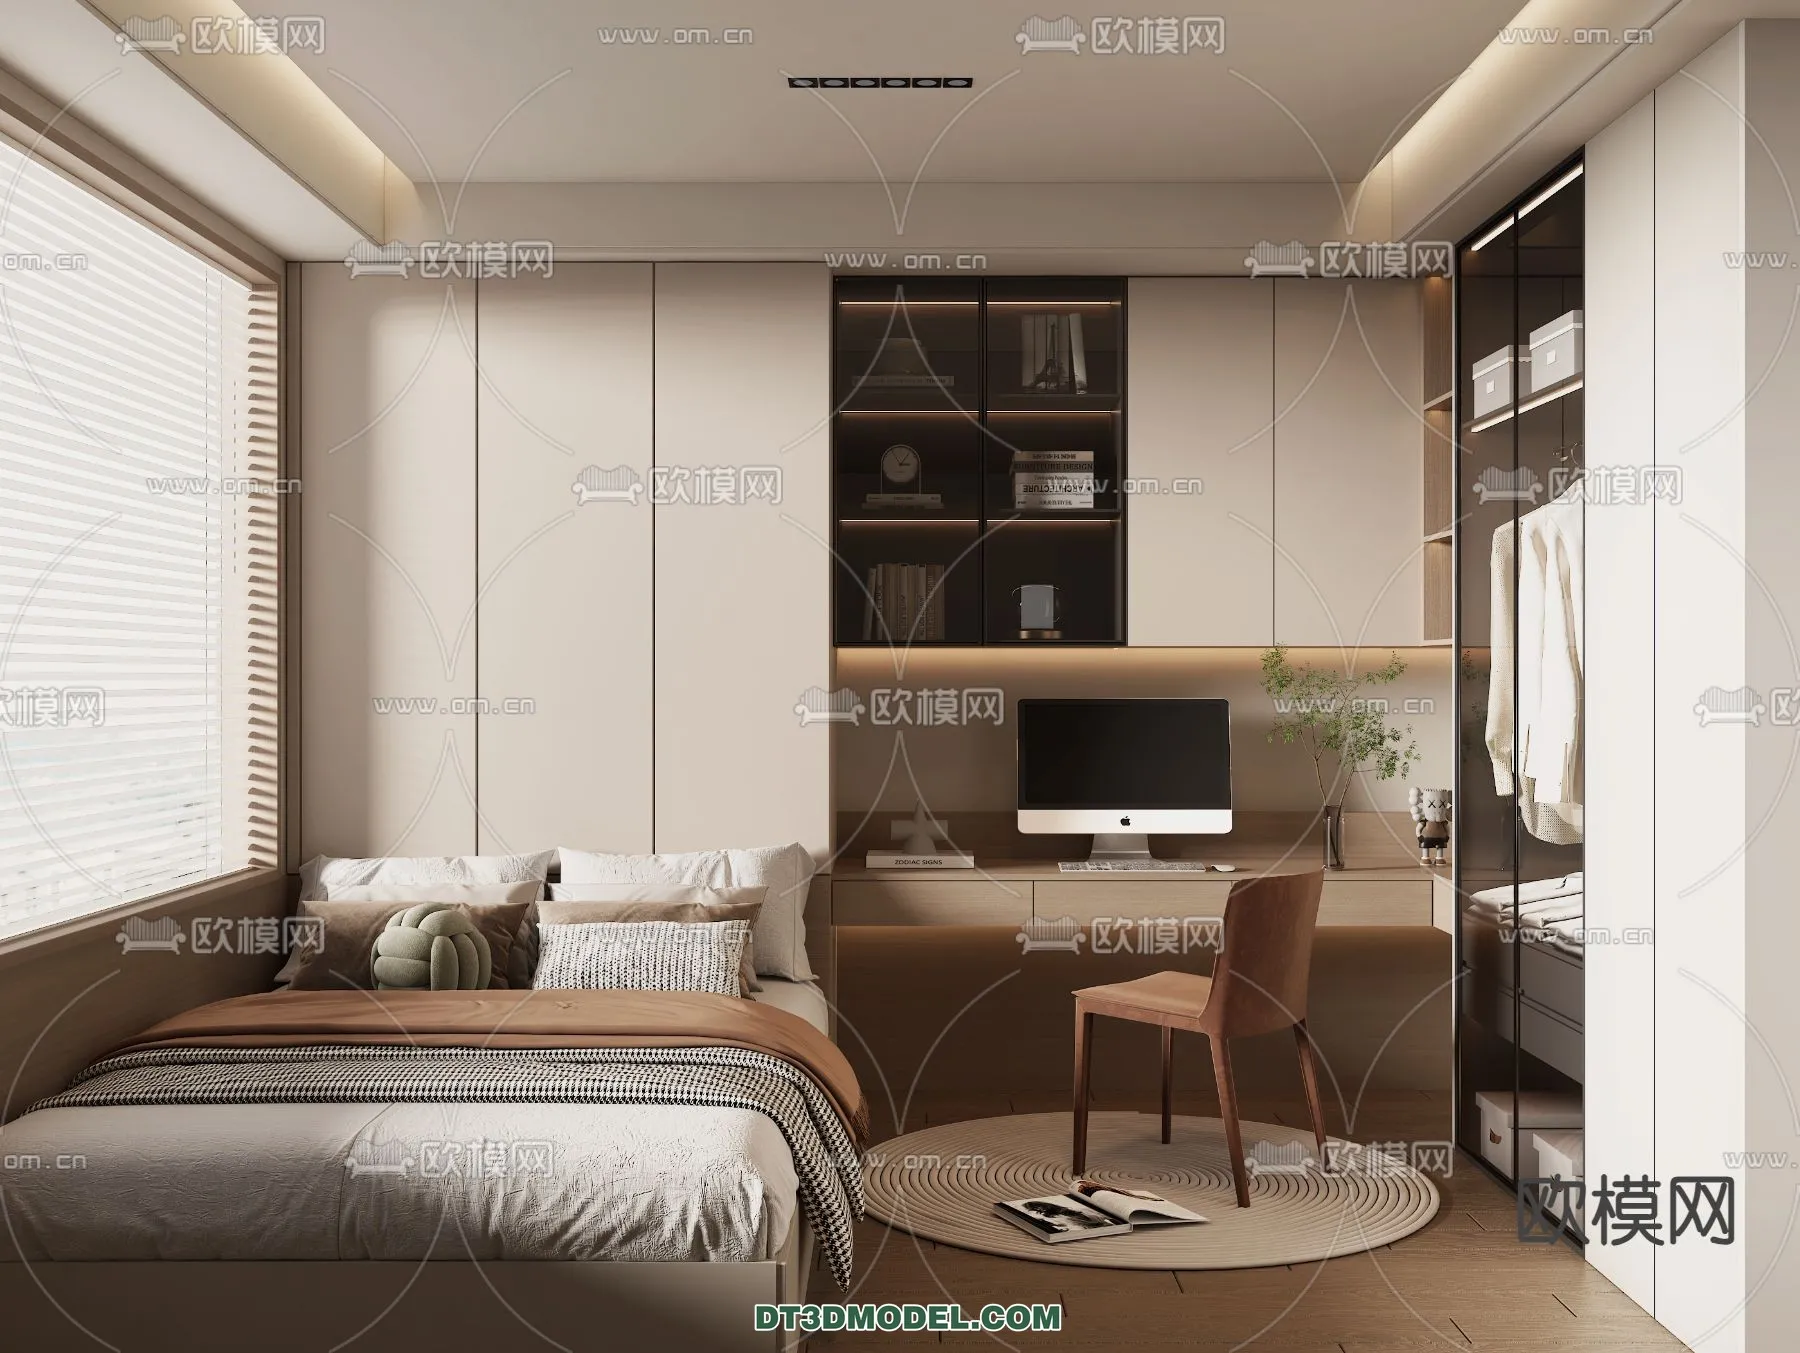 Tatami Bedroom – Japan Bedroom – 3D Scene – 042